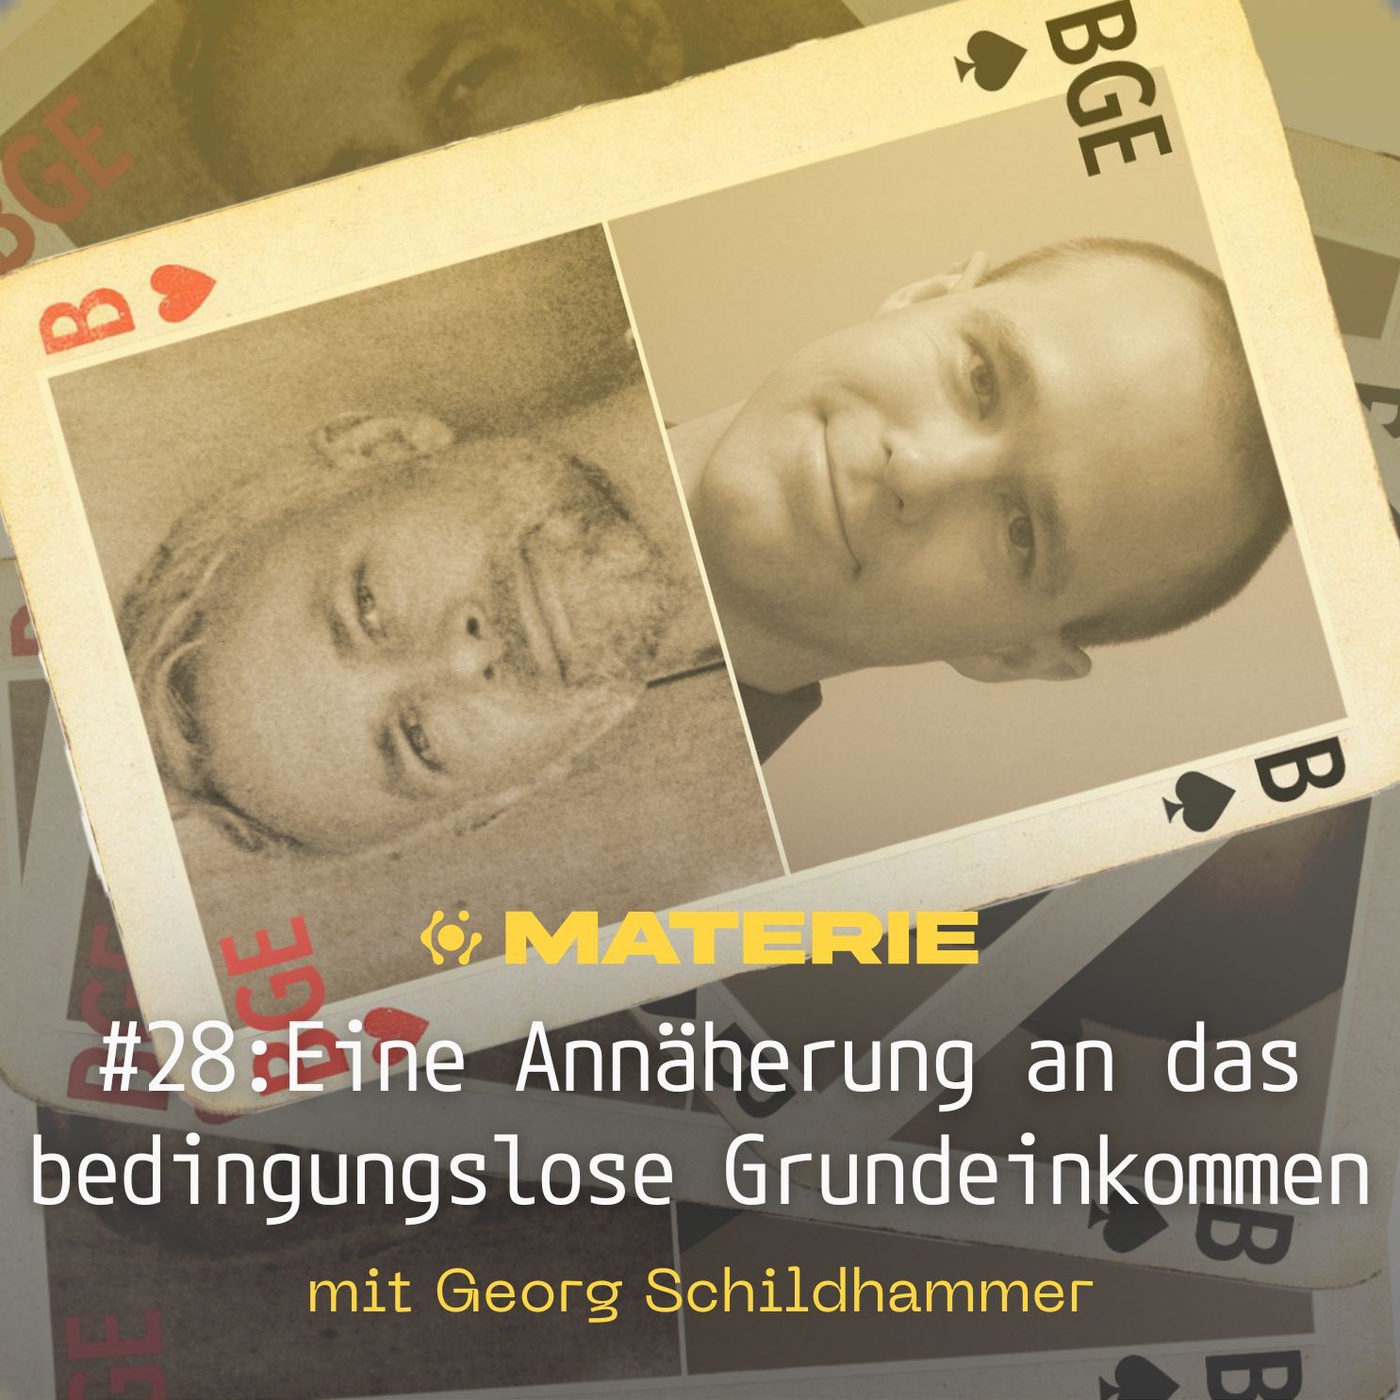 Eine Annäherung an das bedingungslose Grundeinkommen - Georg Schildhammer